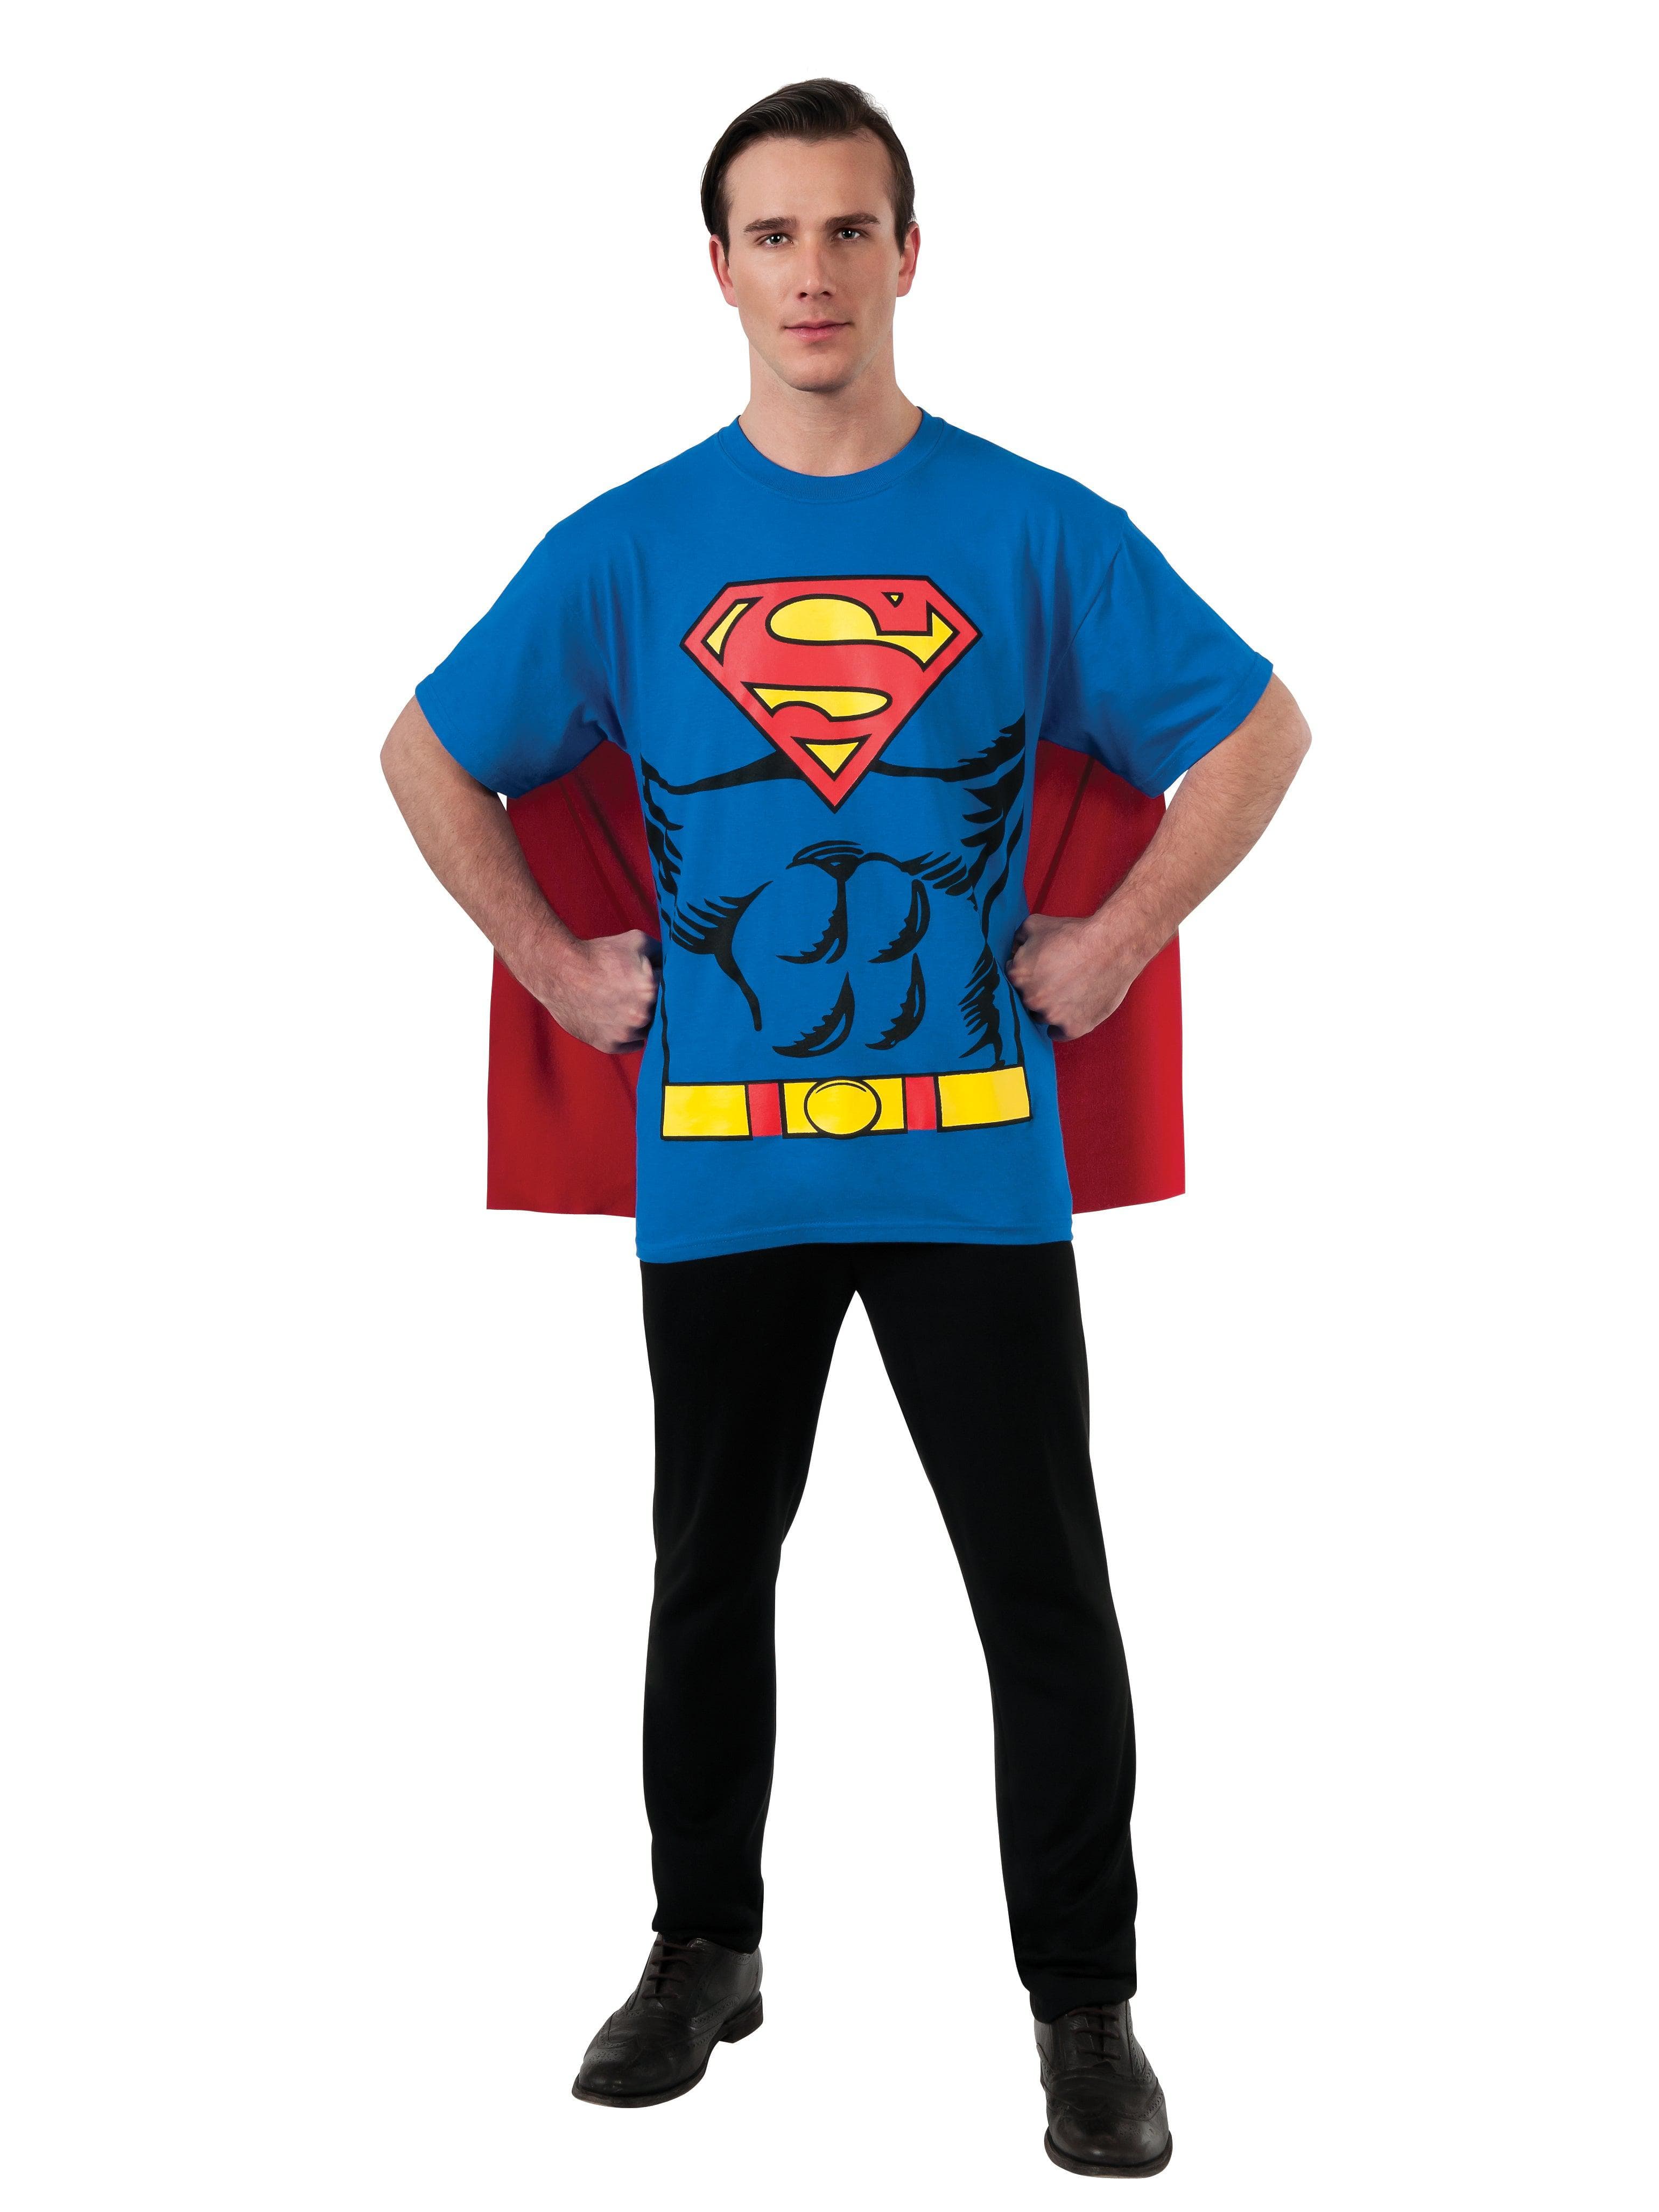 Adult Justice League Superman Costume